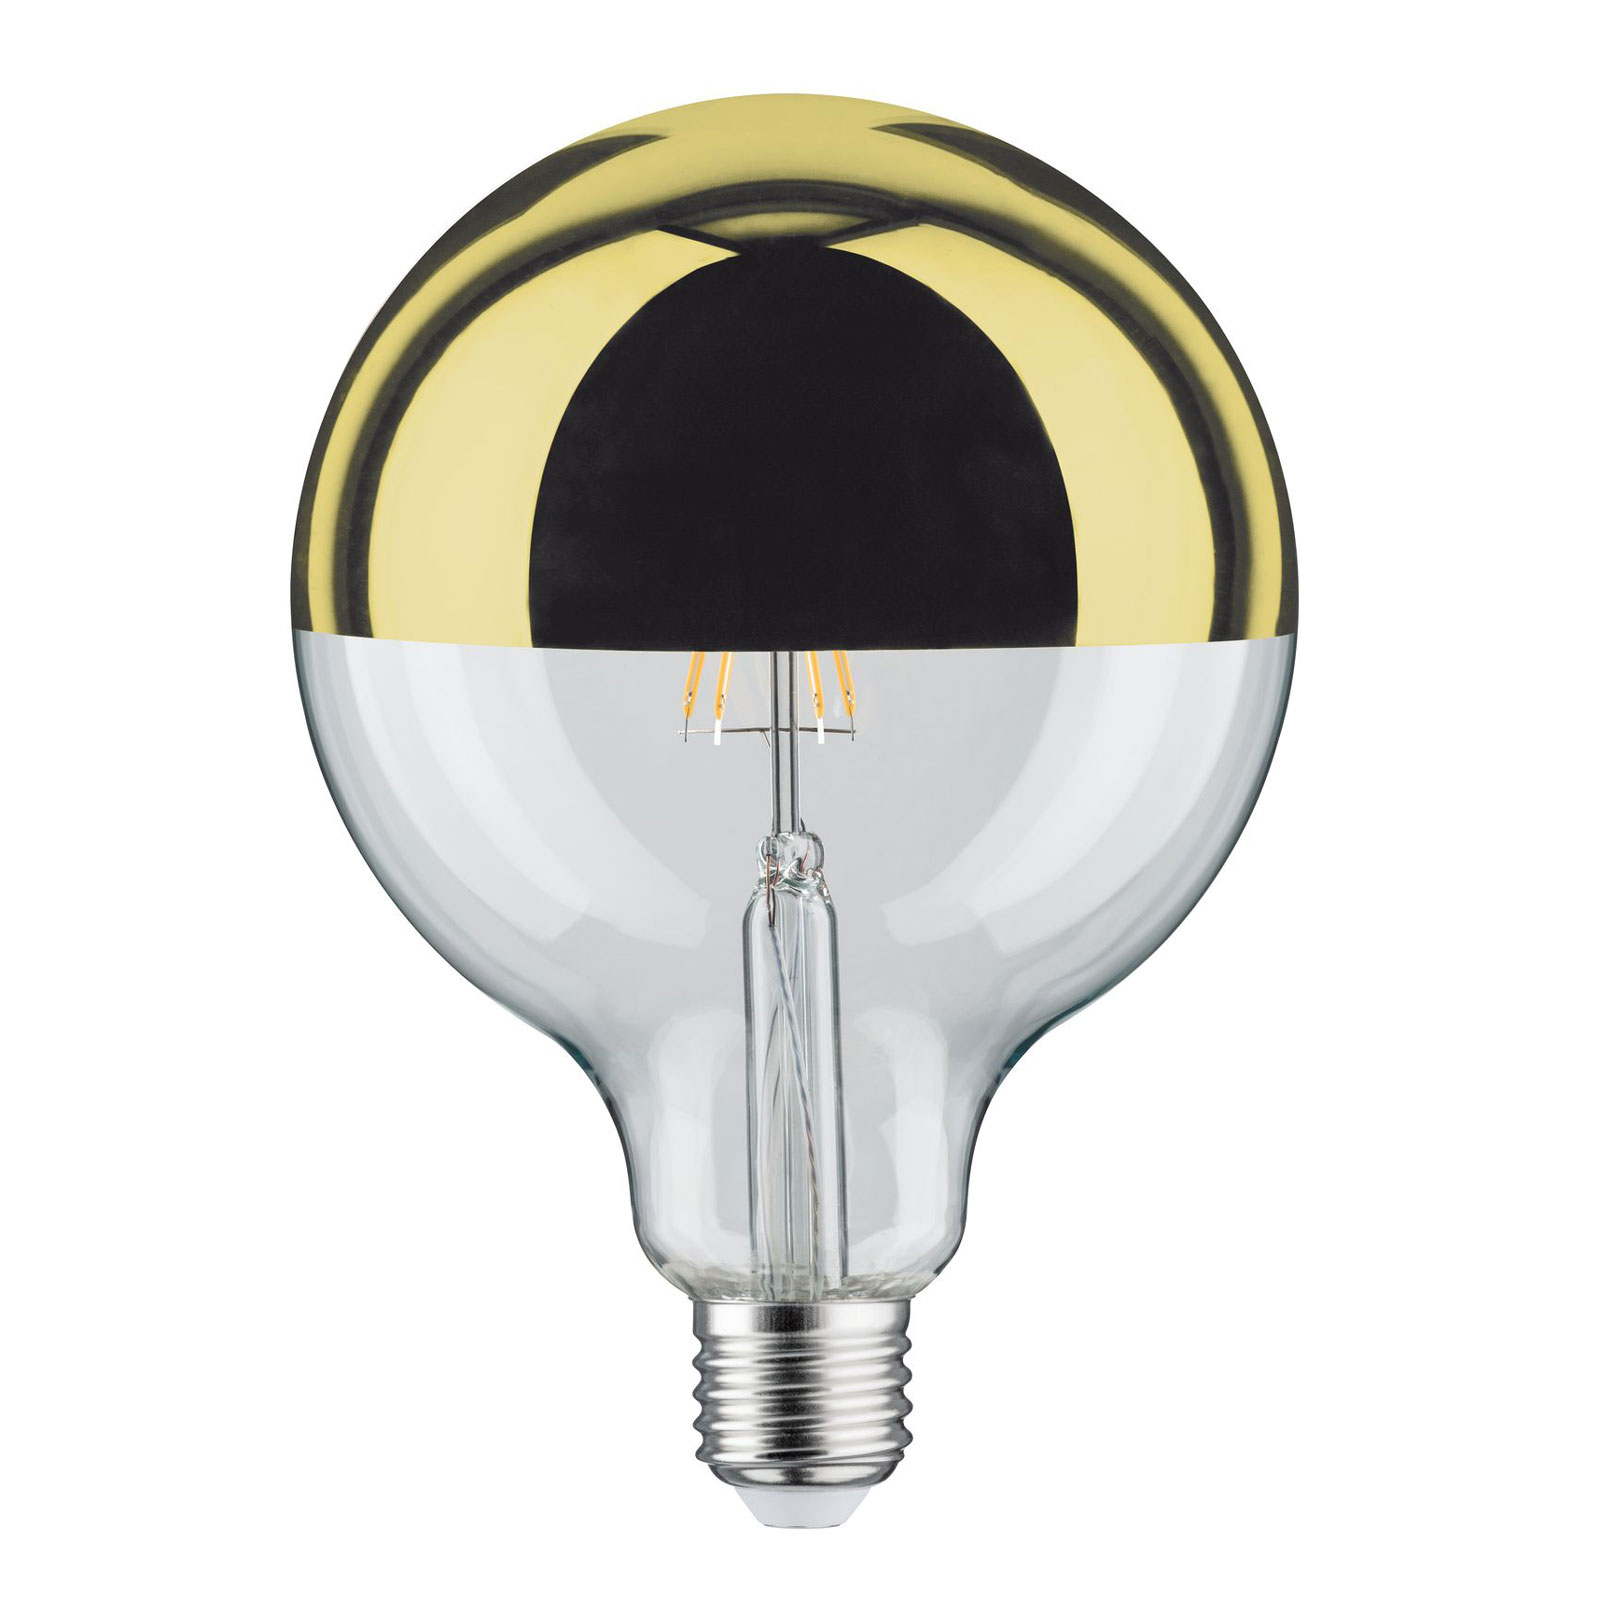 LED lamp E27 G125 827 6,5W Kopspiegel goud